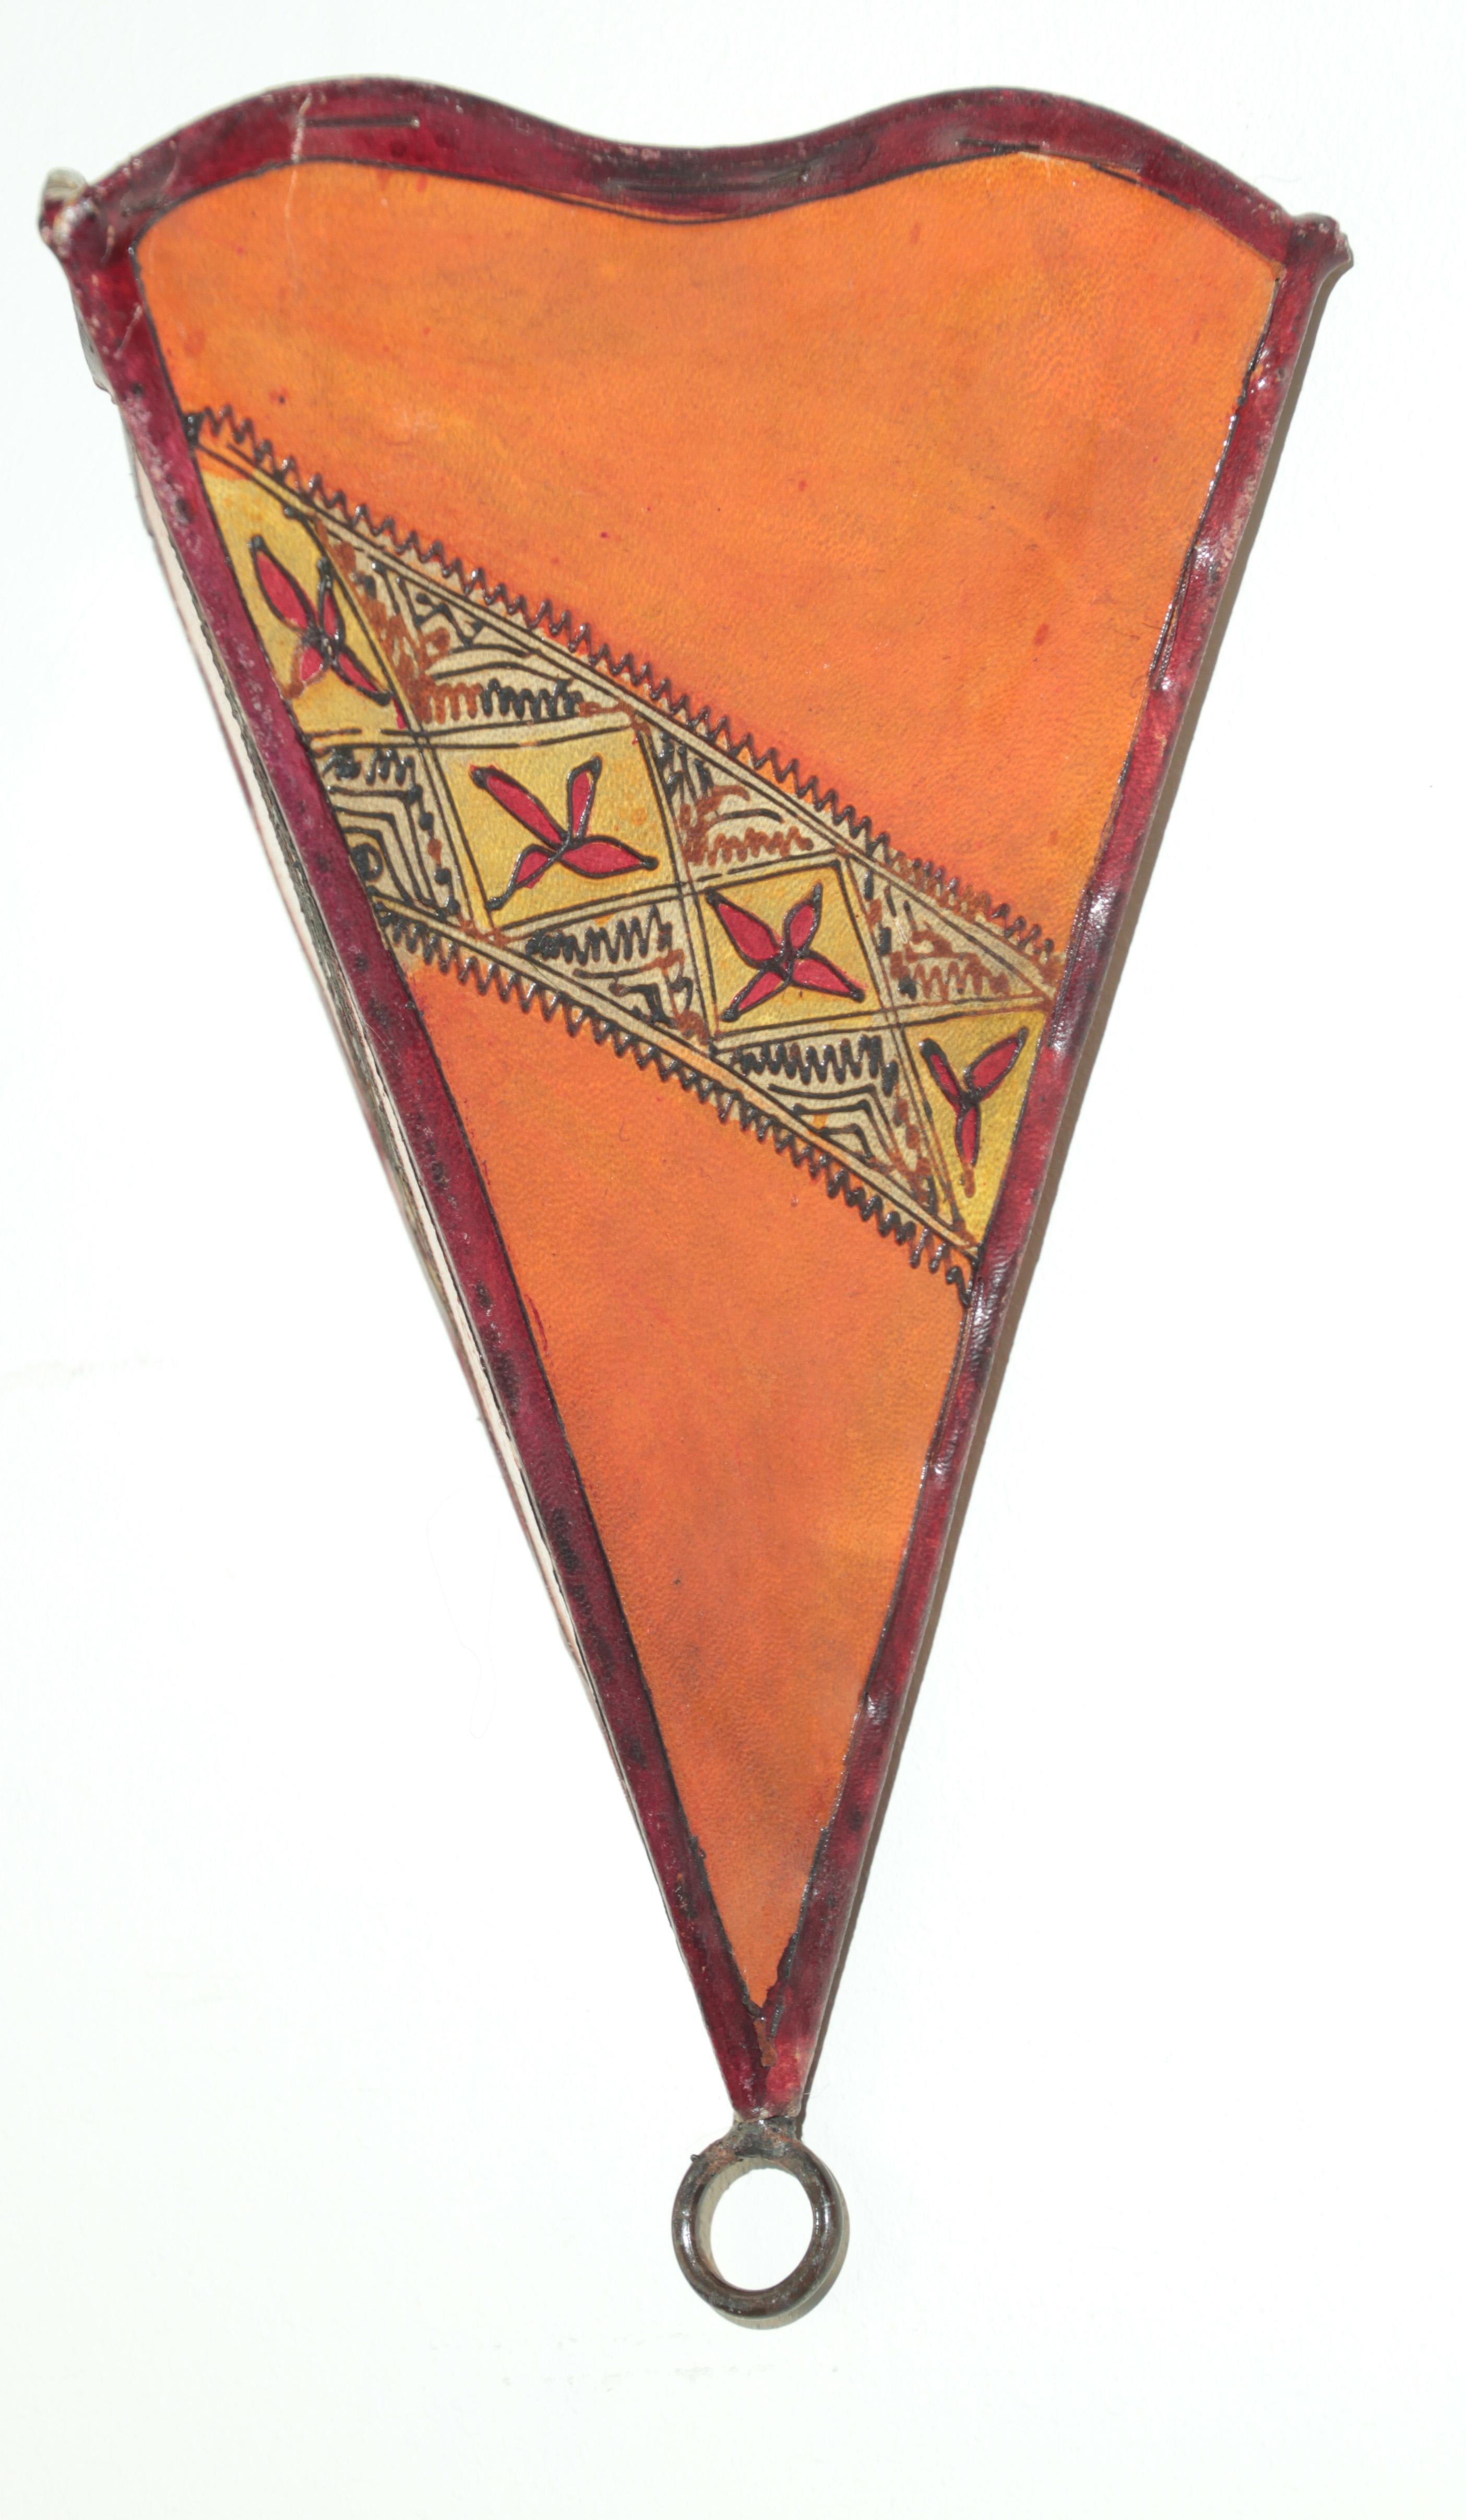 Applique murale d'art tribal africain en parchemin présentant une grande forme triangulaire en peau cousue sur du fer et une surface peinte à la main.
Ces pièces d'art marocain peuvent être utilisées comme abat-jour de lampe murale.
Le cadre en